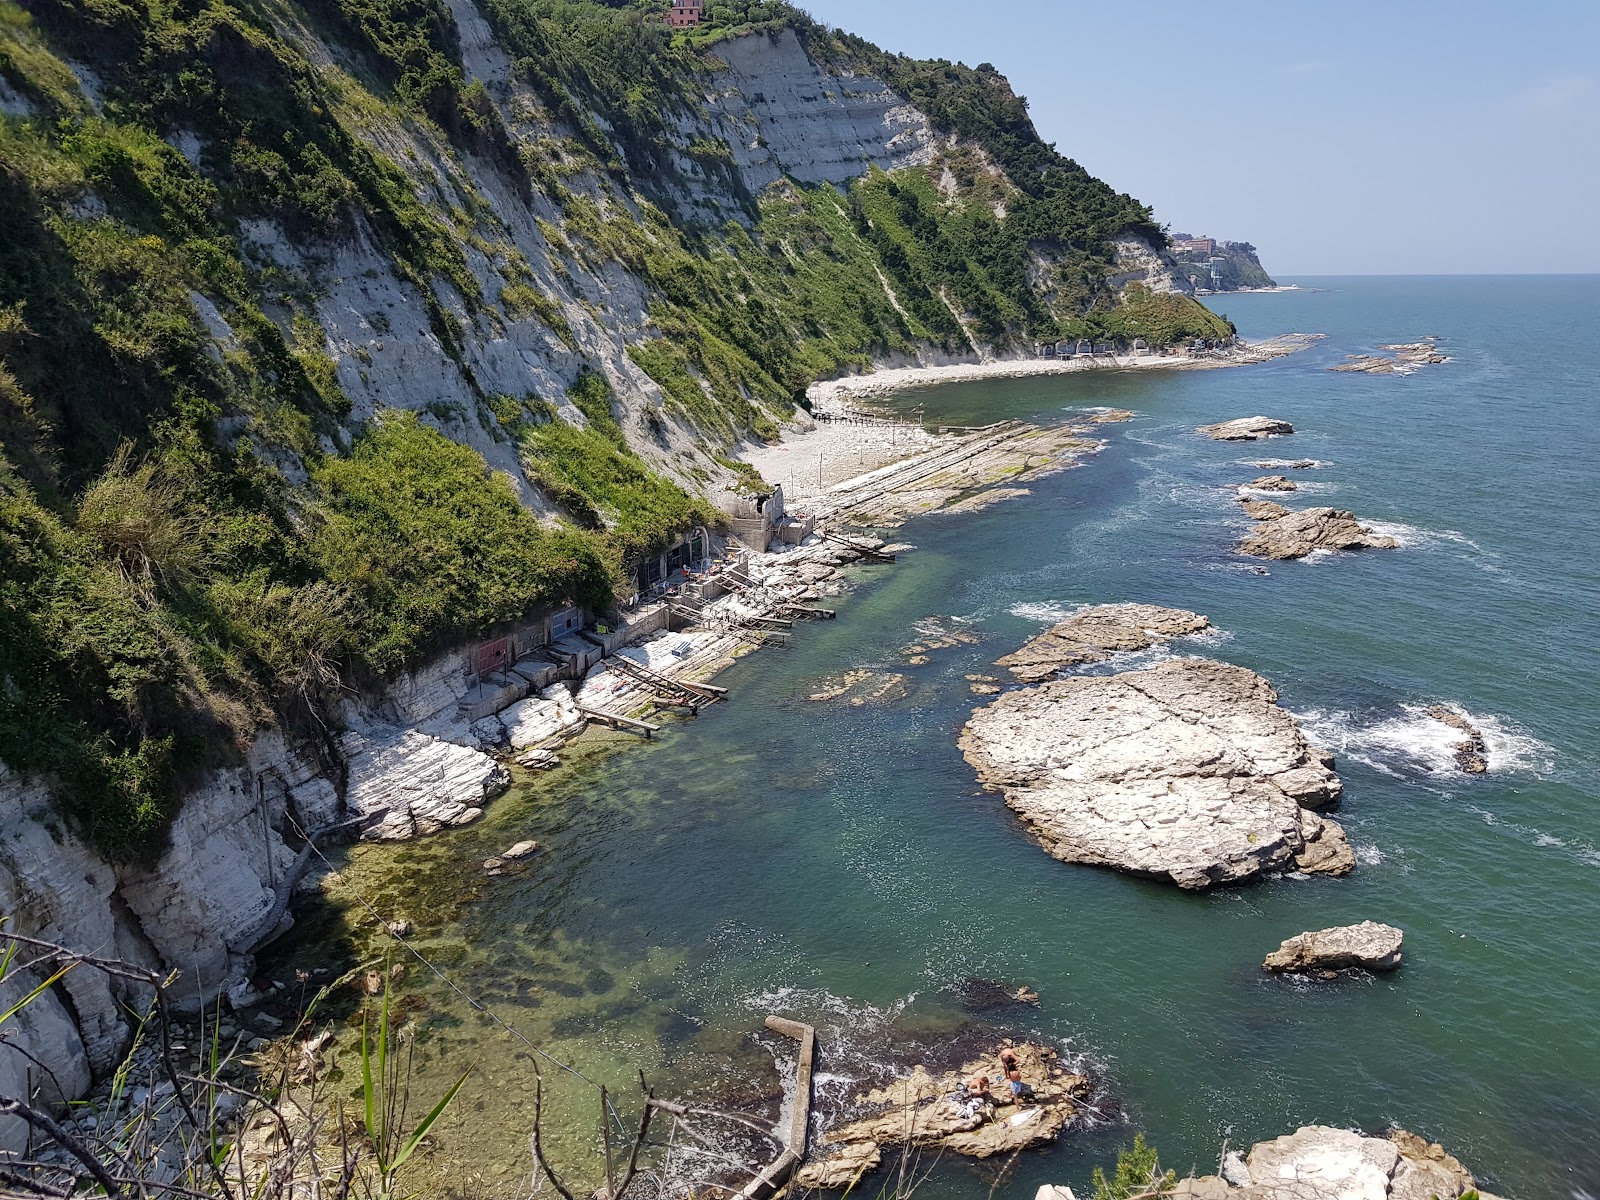 Fotografija Spiaggia della Vedova nahaja se v naravnem okolju